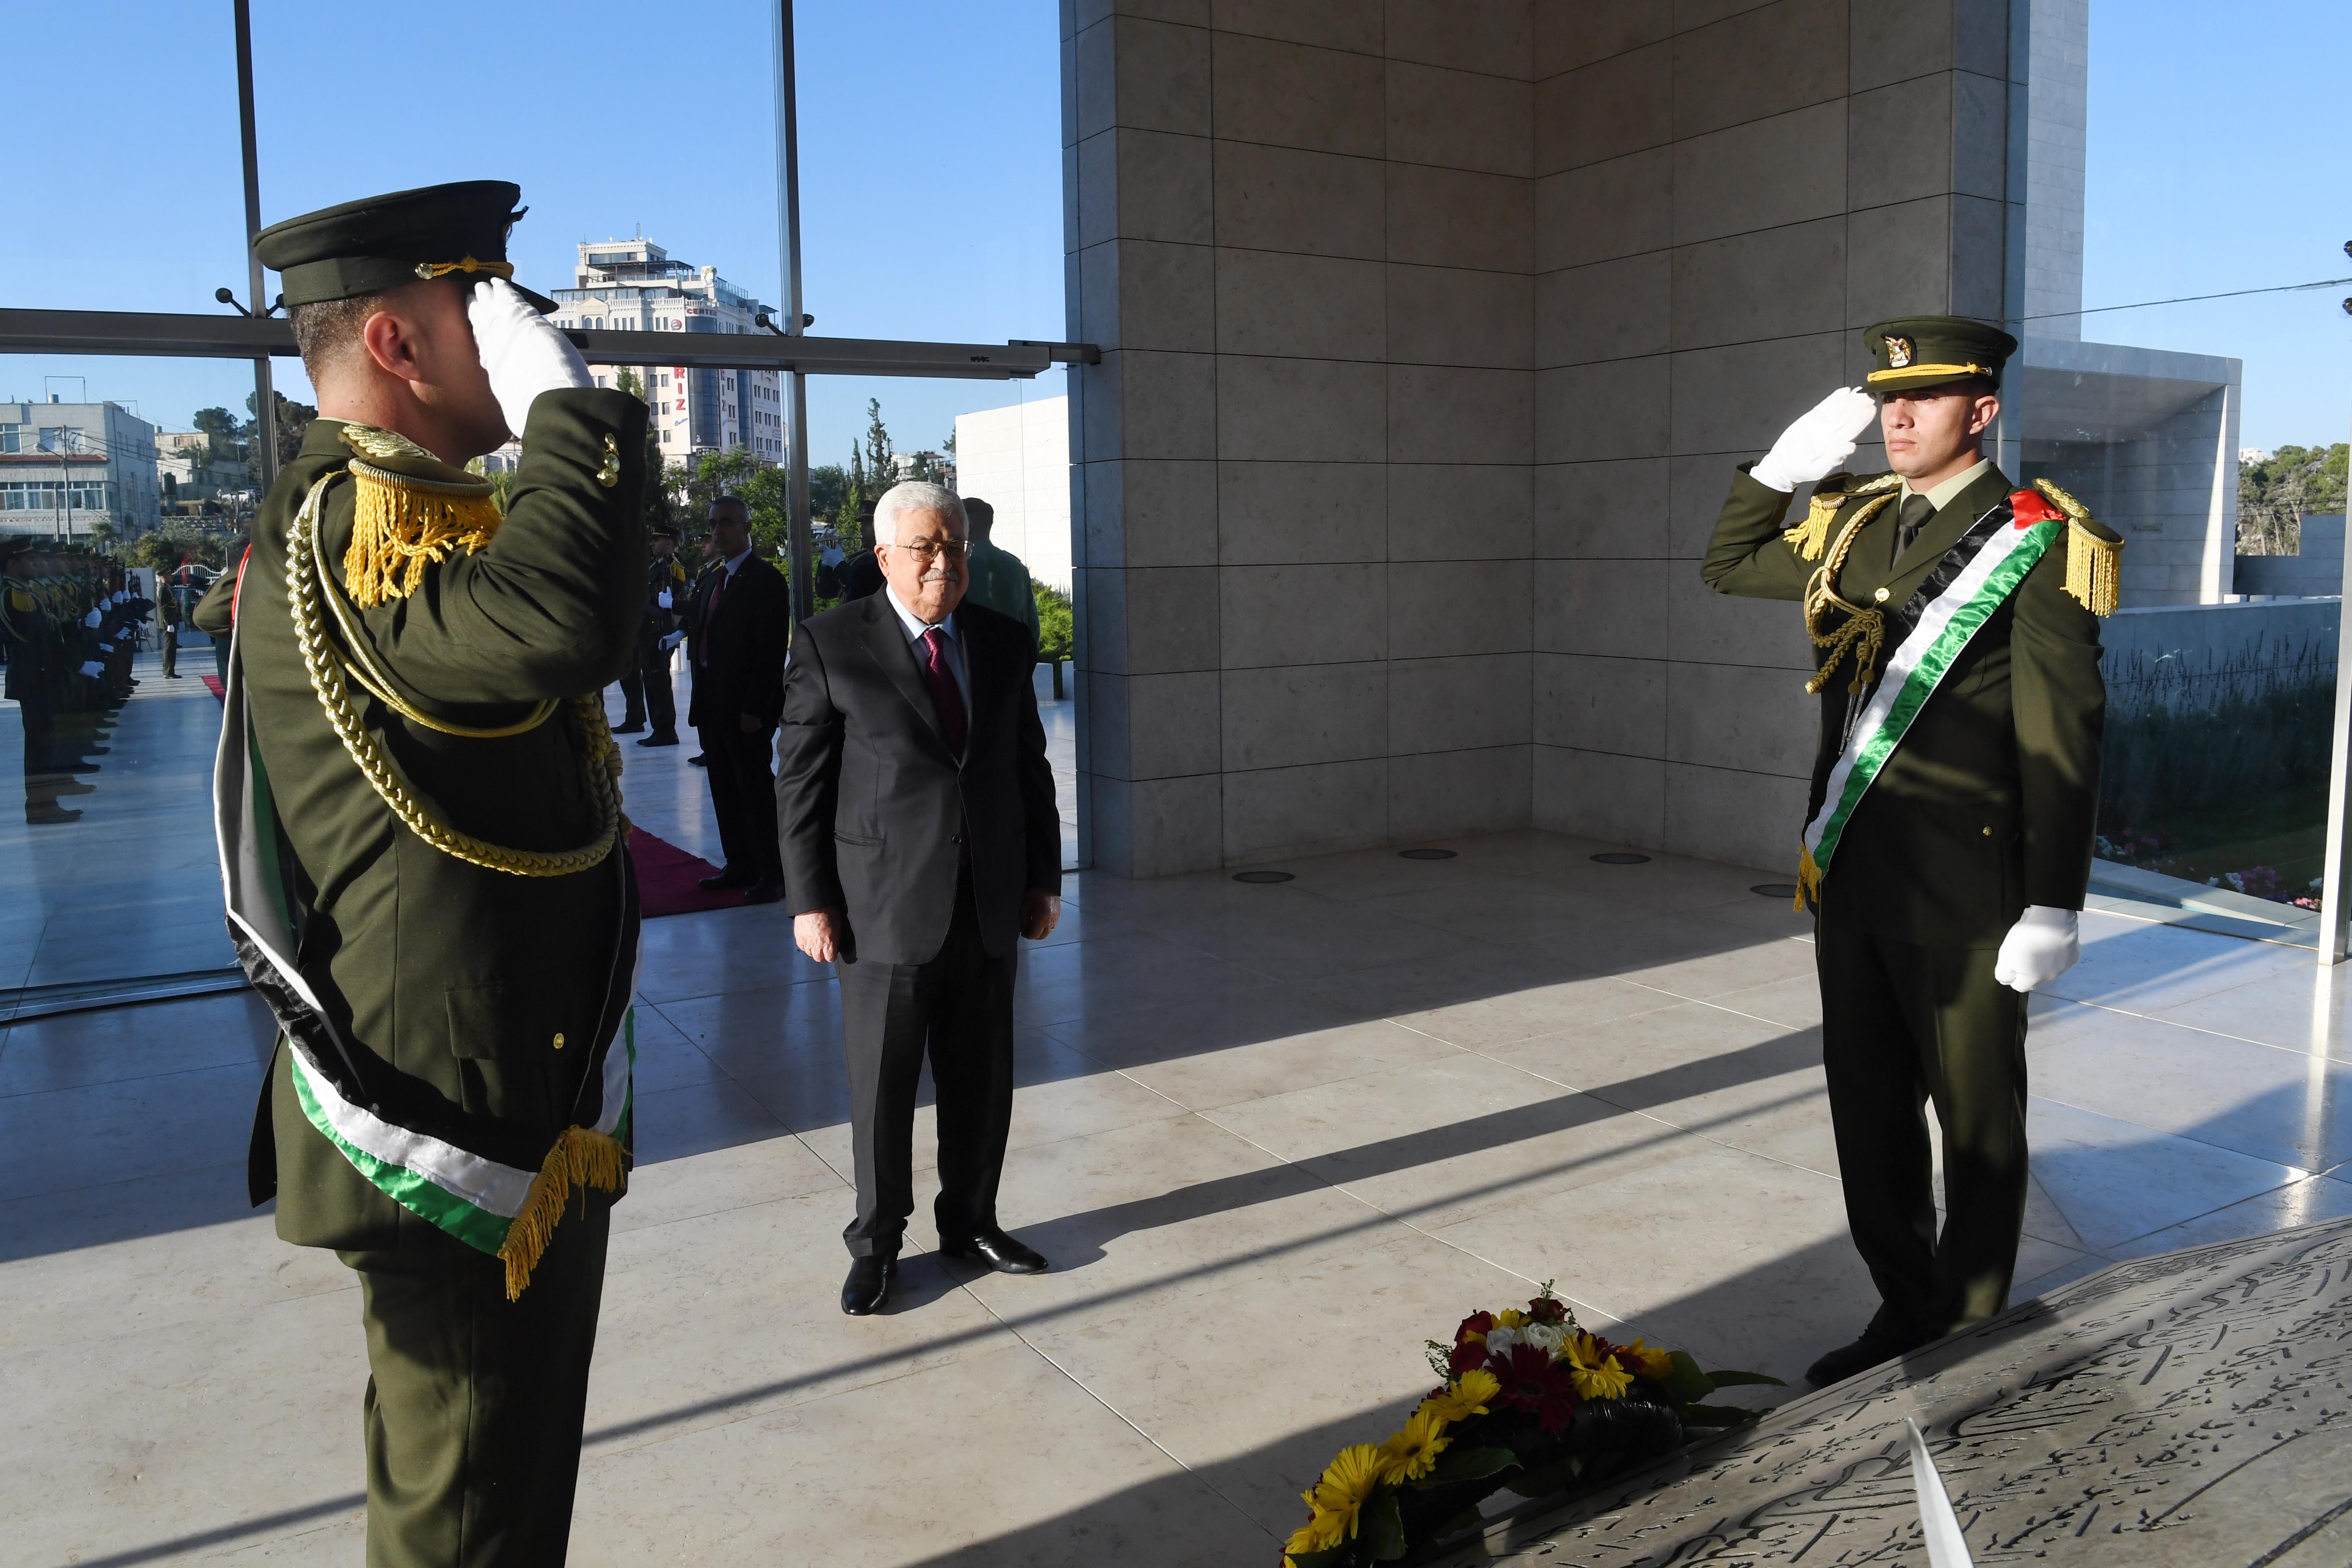 Abbas déposant une gerbe de fleurs sur la tombe de l’ancien président palestinien défunt, Yasser Arafat.